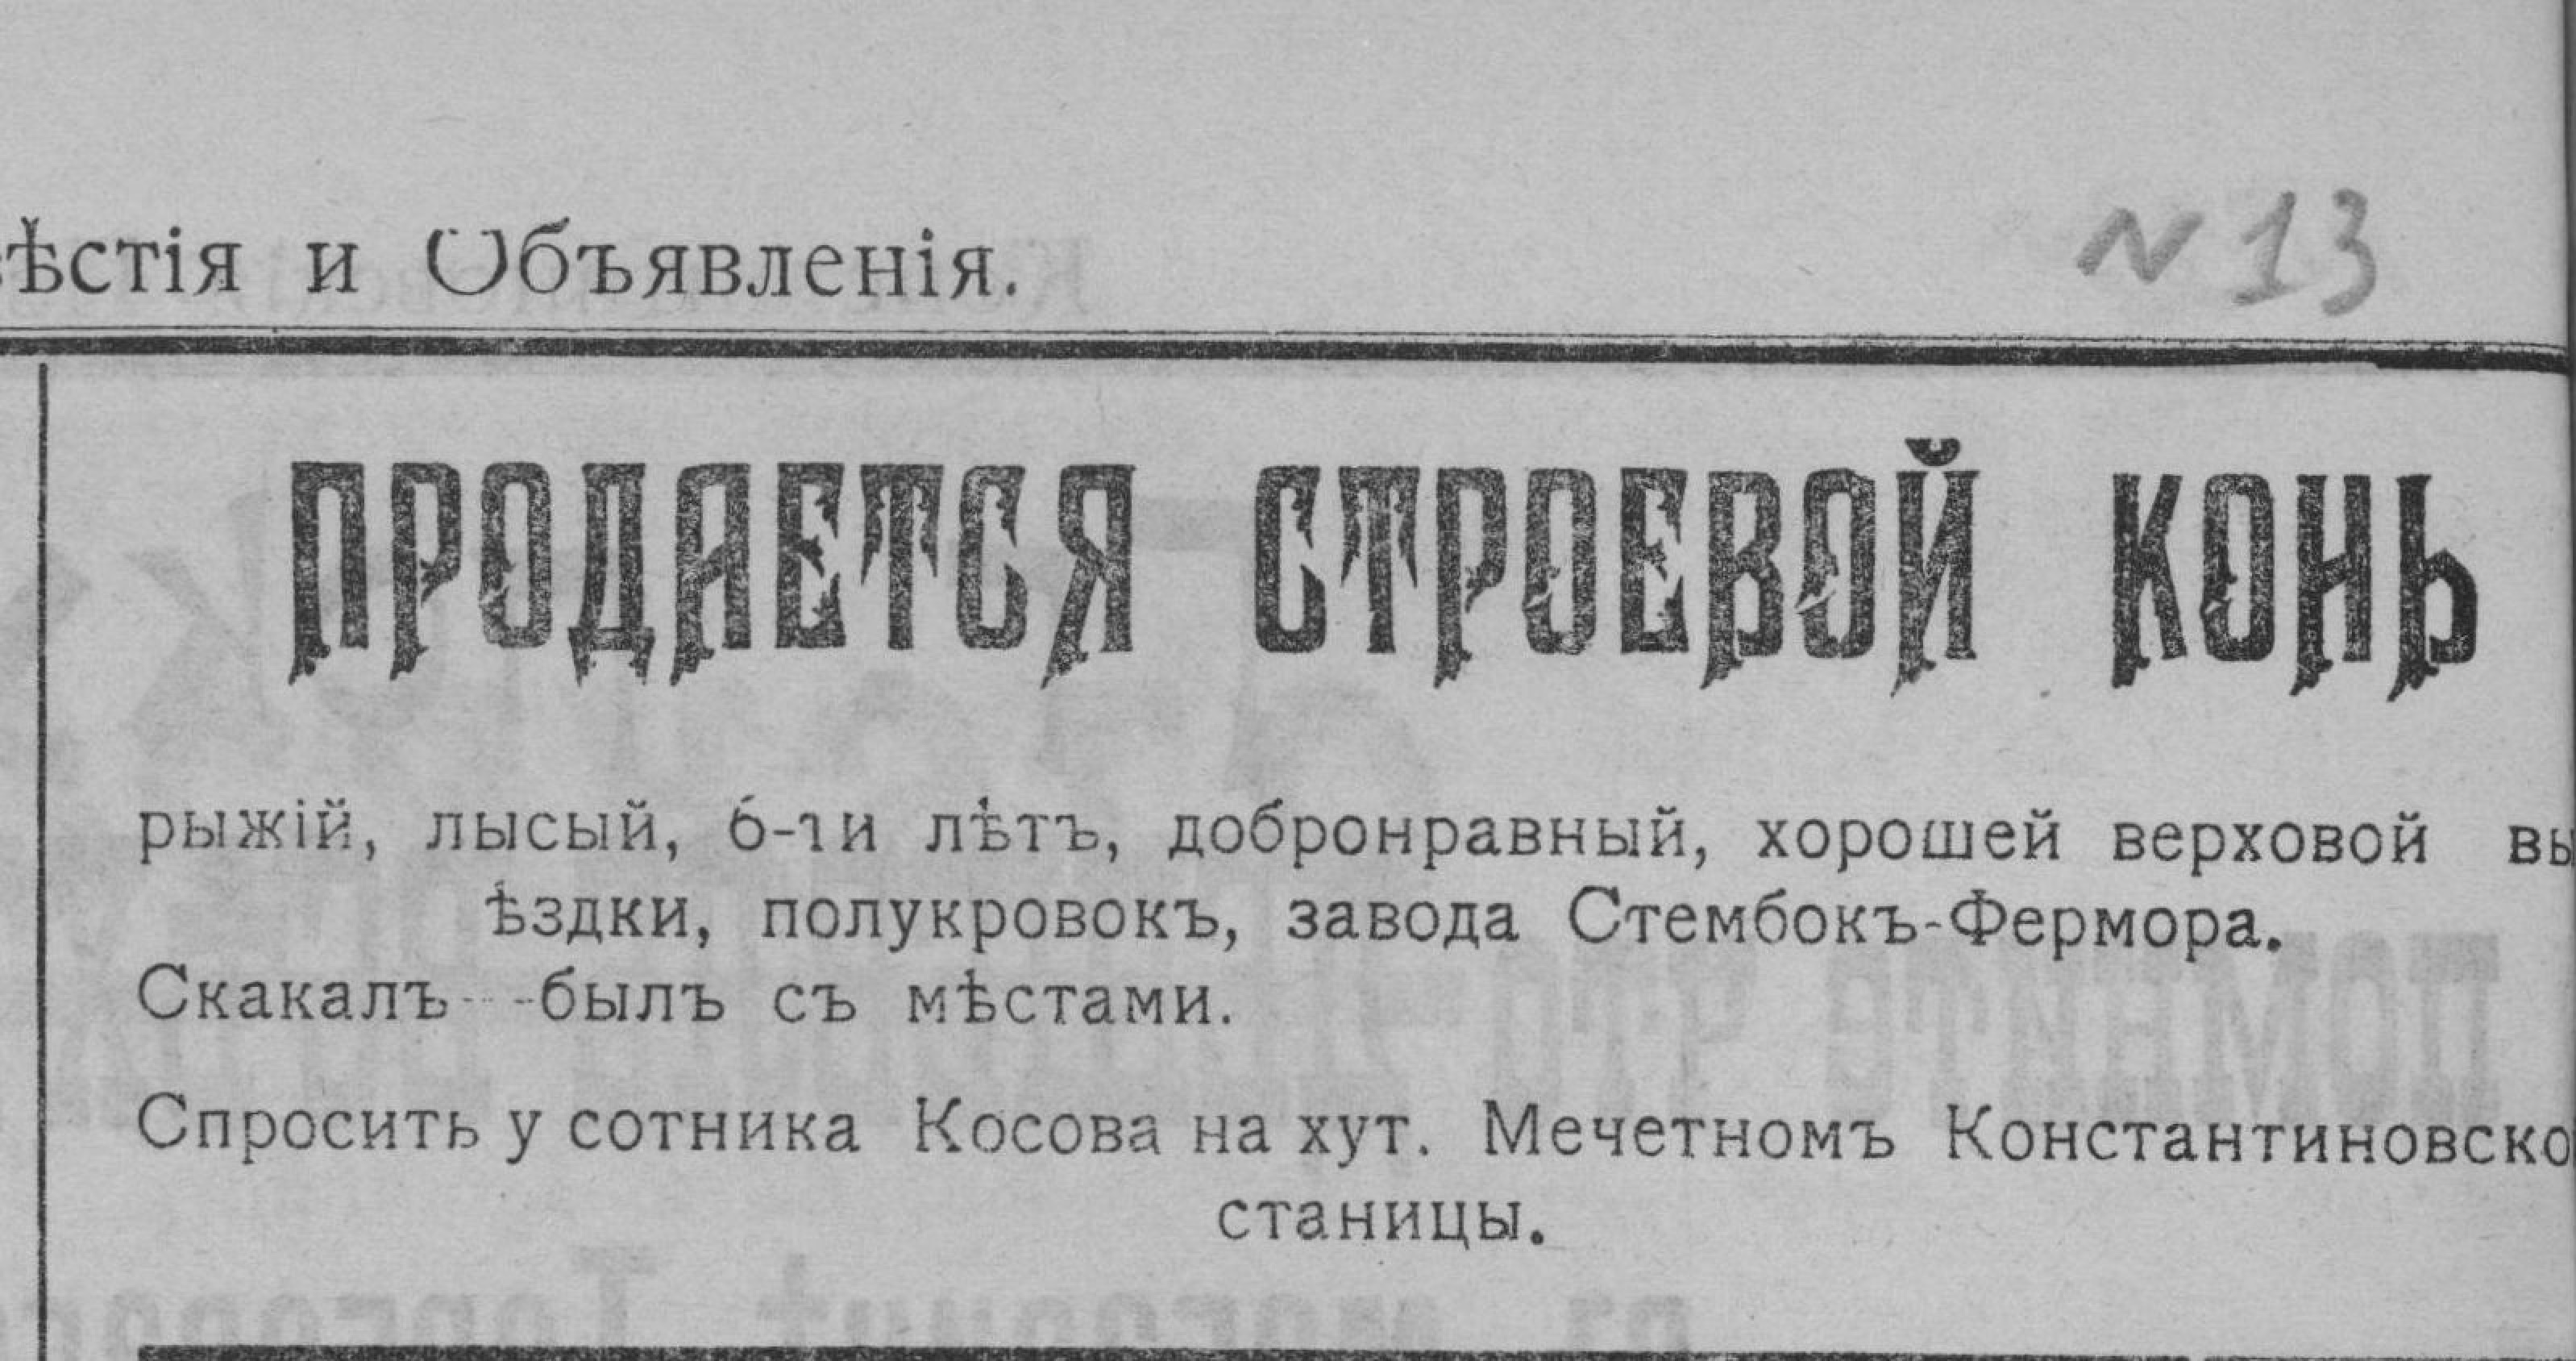 Объявление о продаже строевого коня, х.Мечетной, Константиновской станицы,1912год.